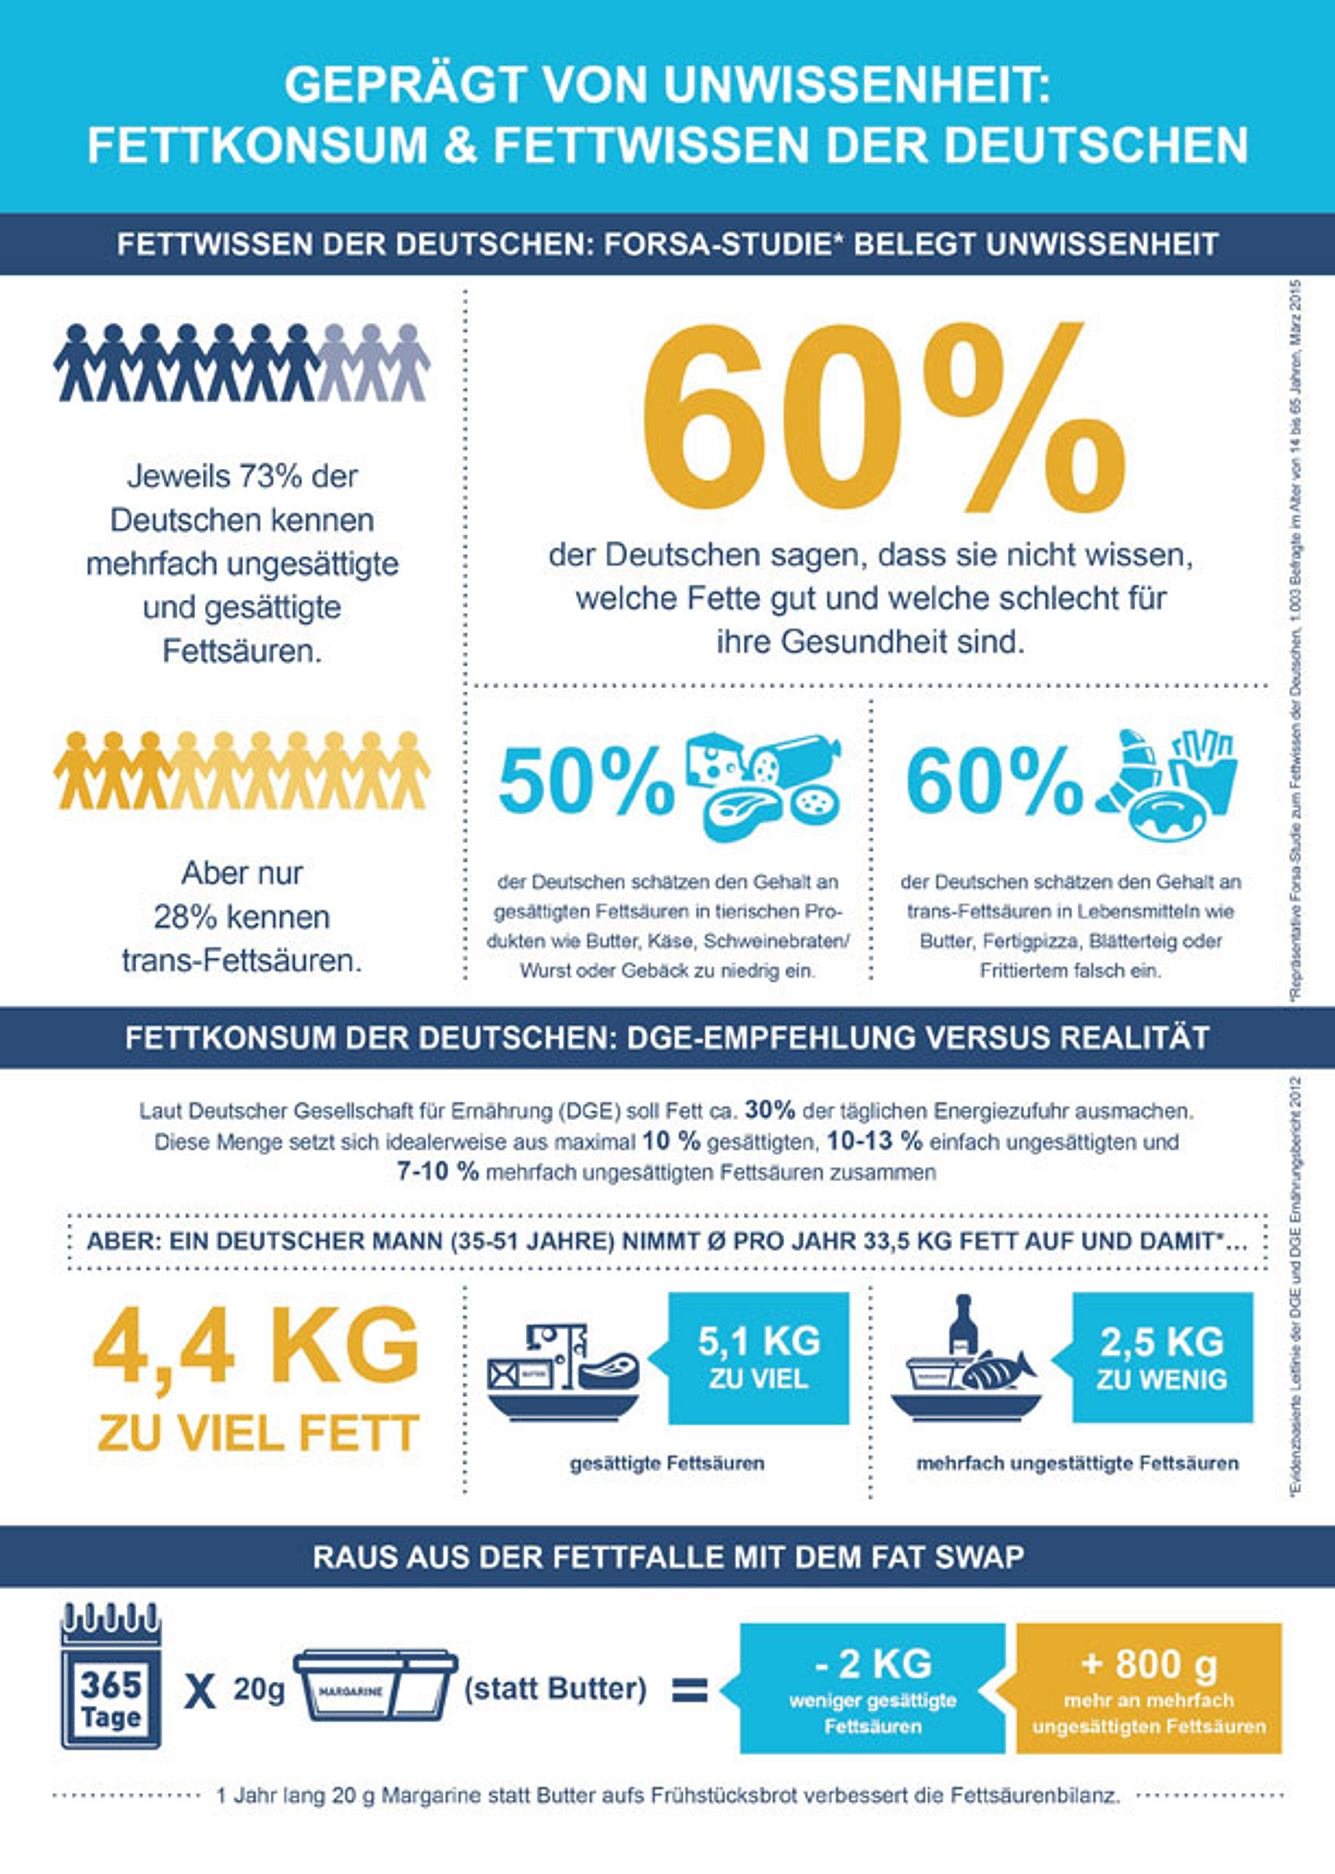 Infografik der Forsa-Fettstudie